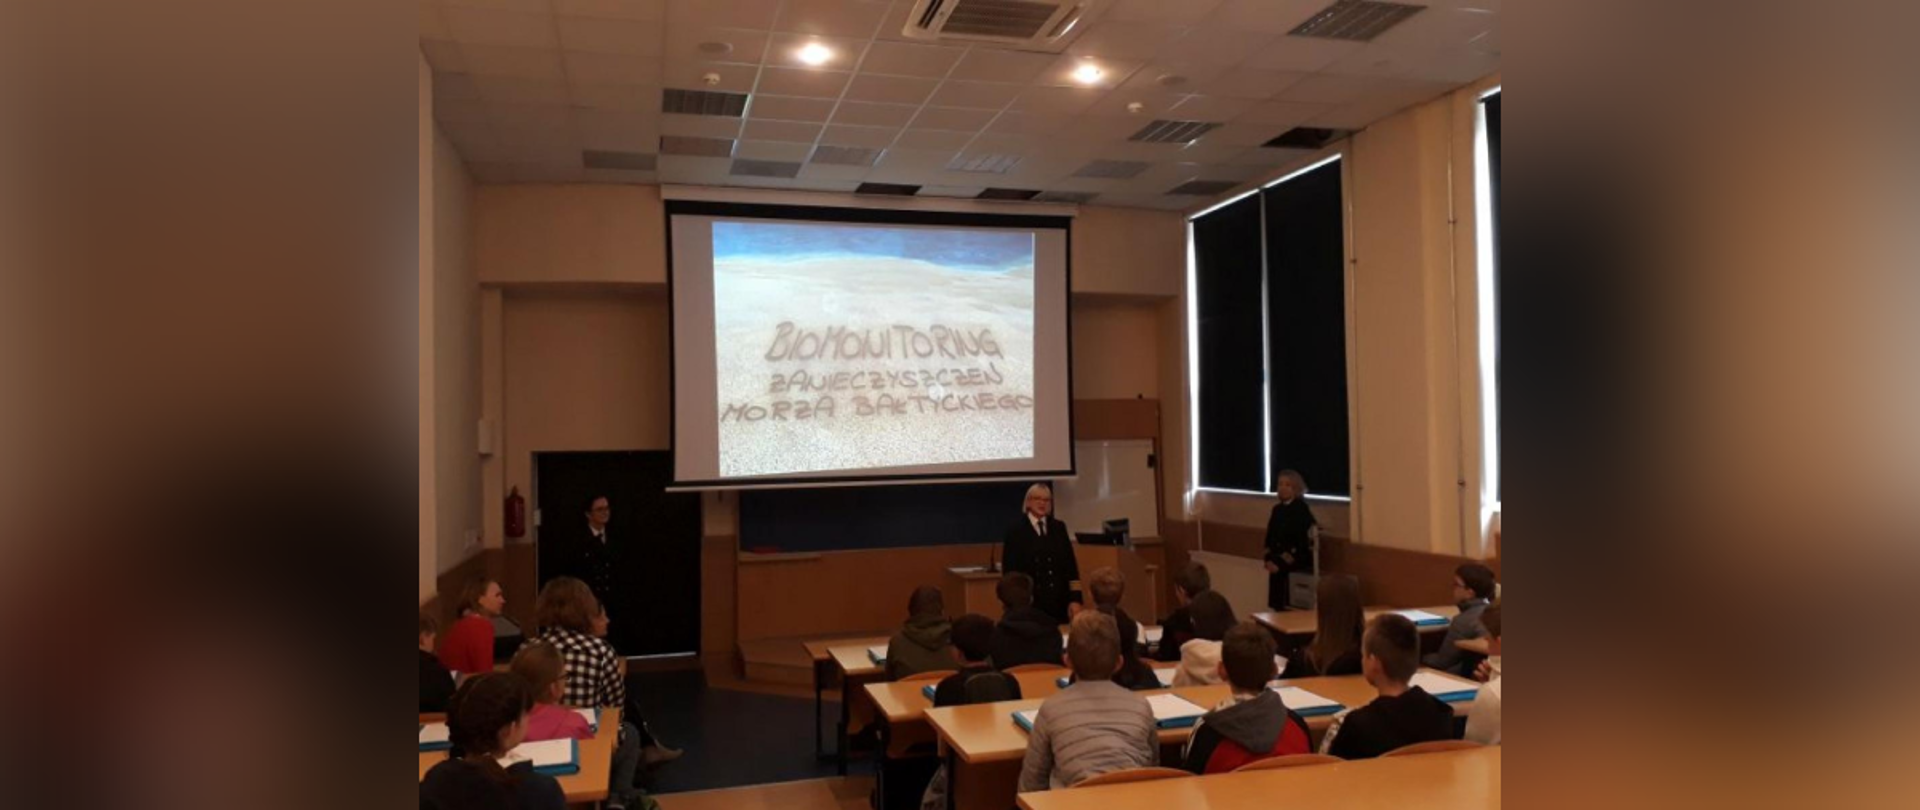 Widok z sali wykładowej na temat Zanieczyszczeń Morza Bałtyckiego